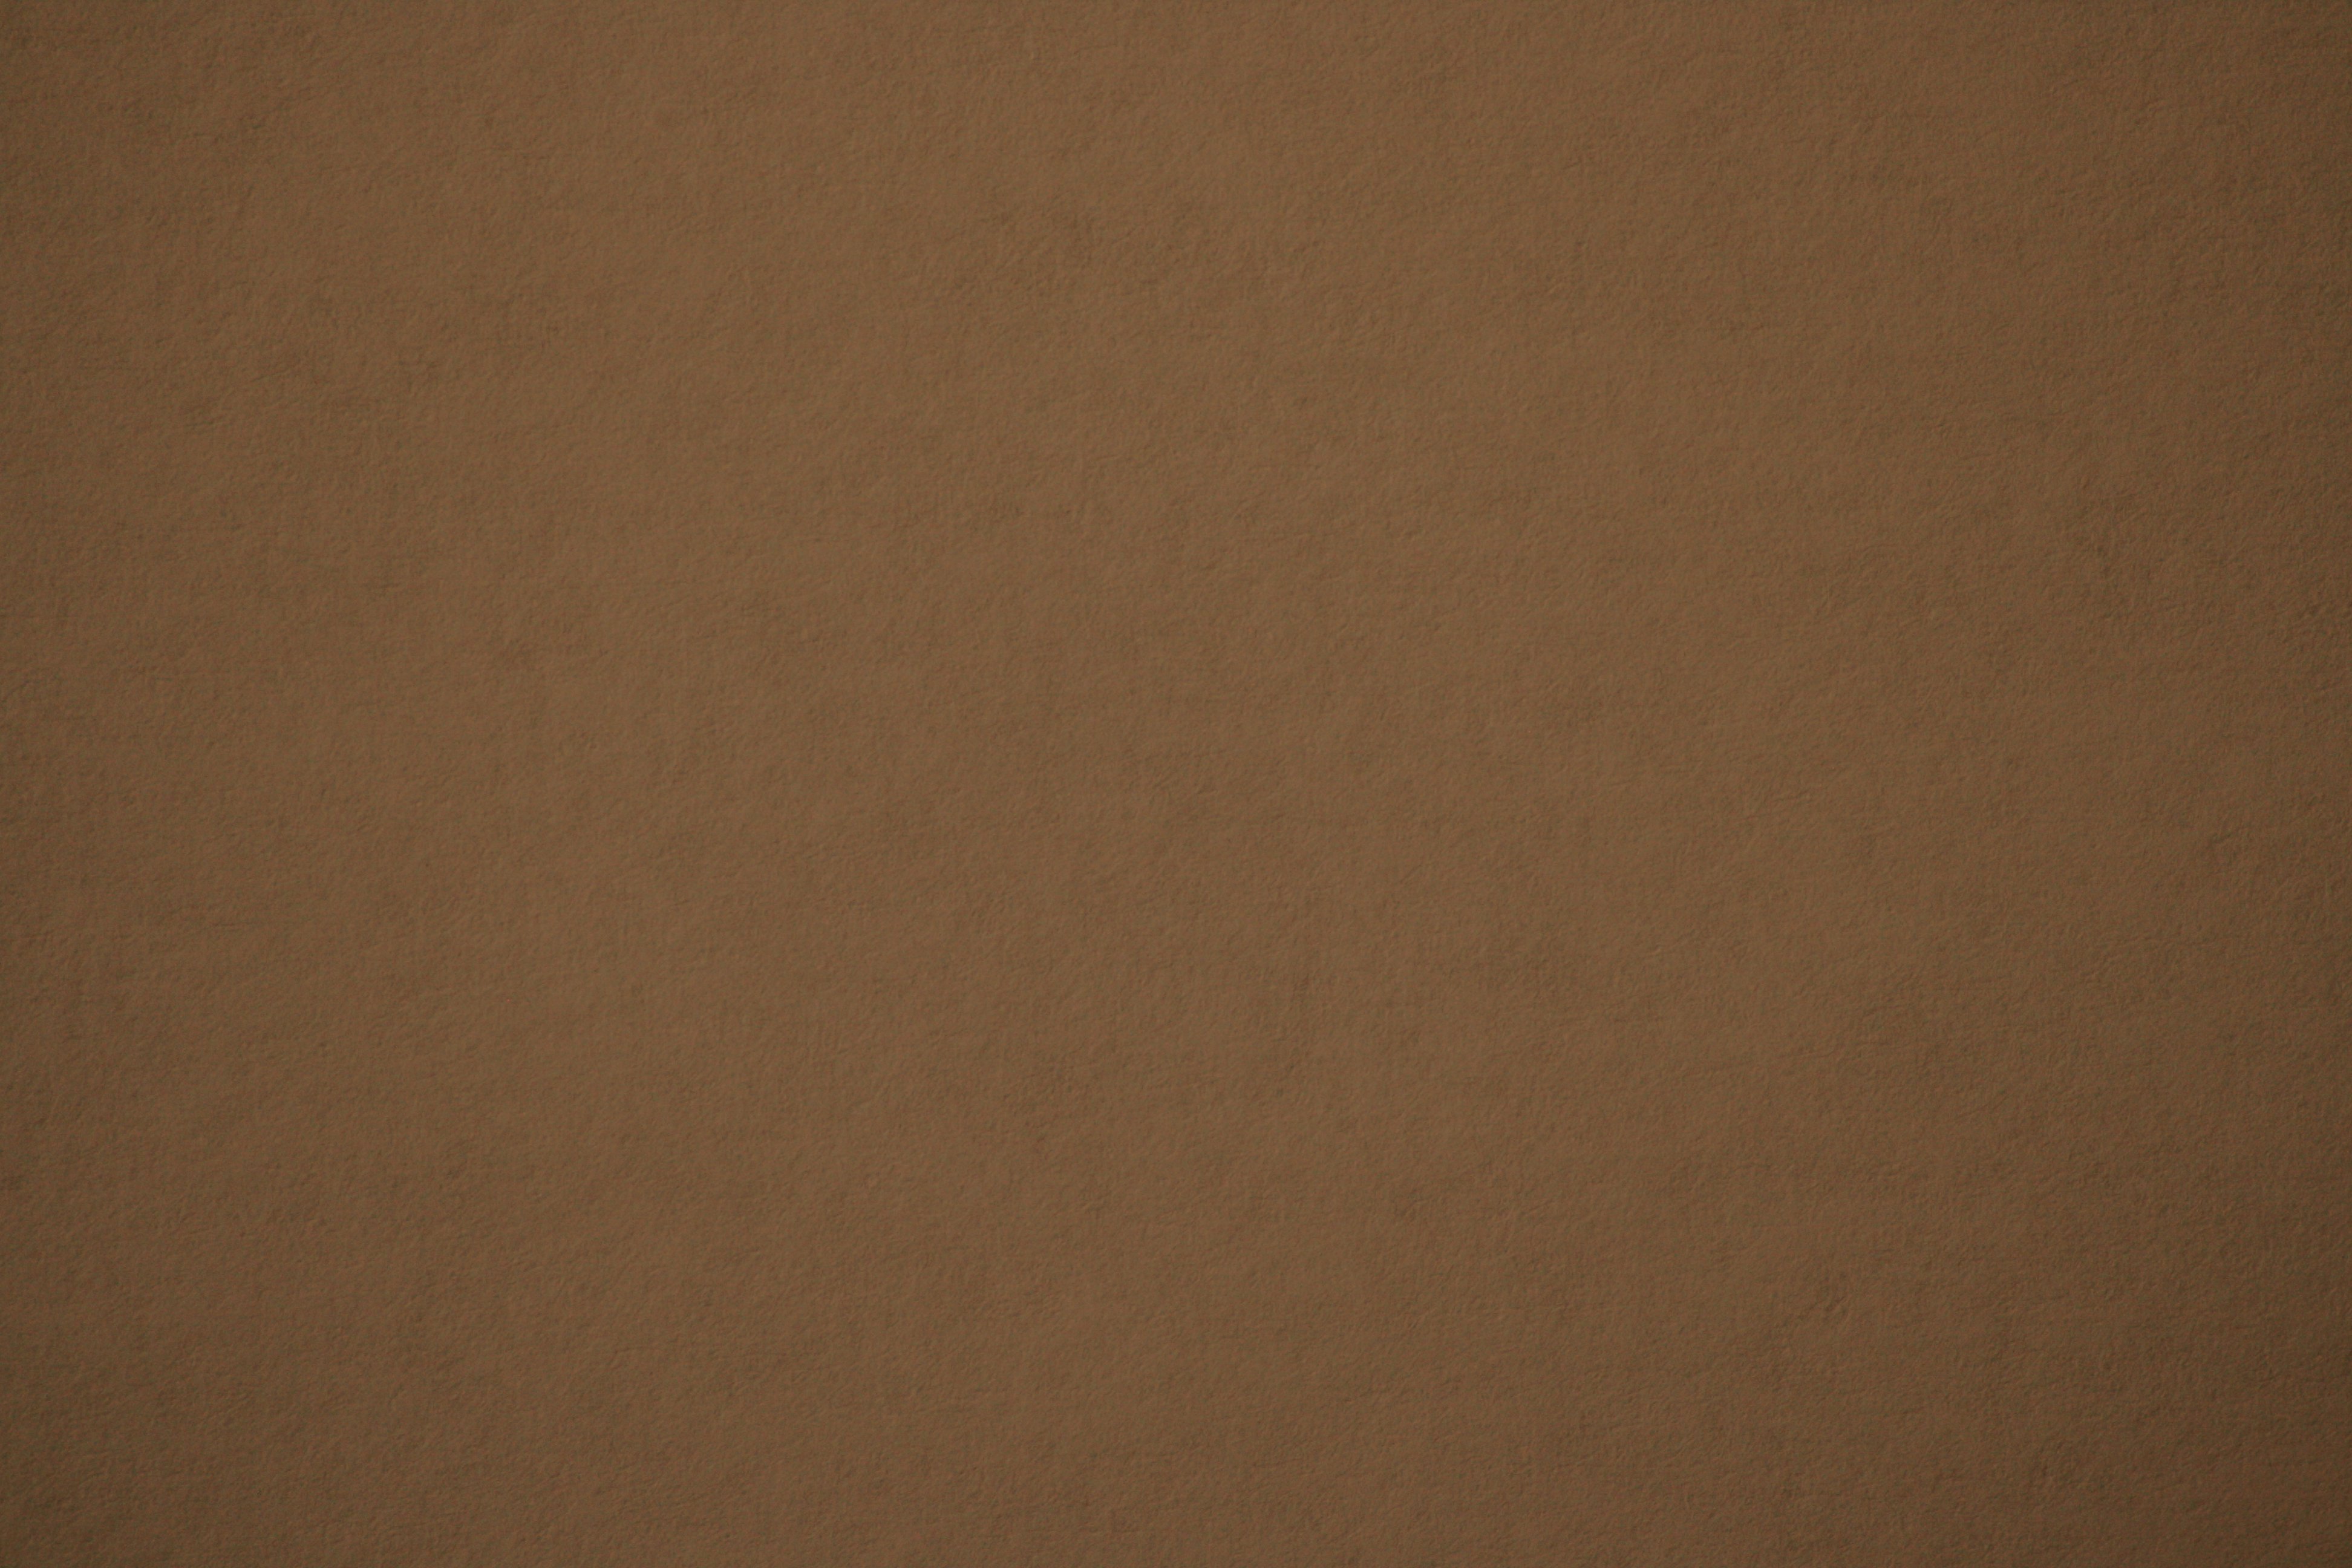 Brown Paper Texture Picture | Free Photograph | Photos Public Domain